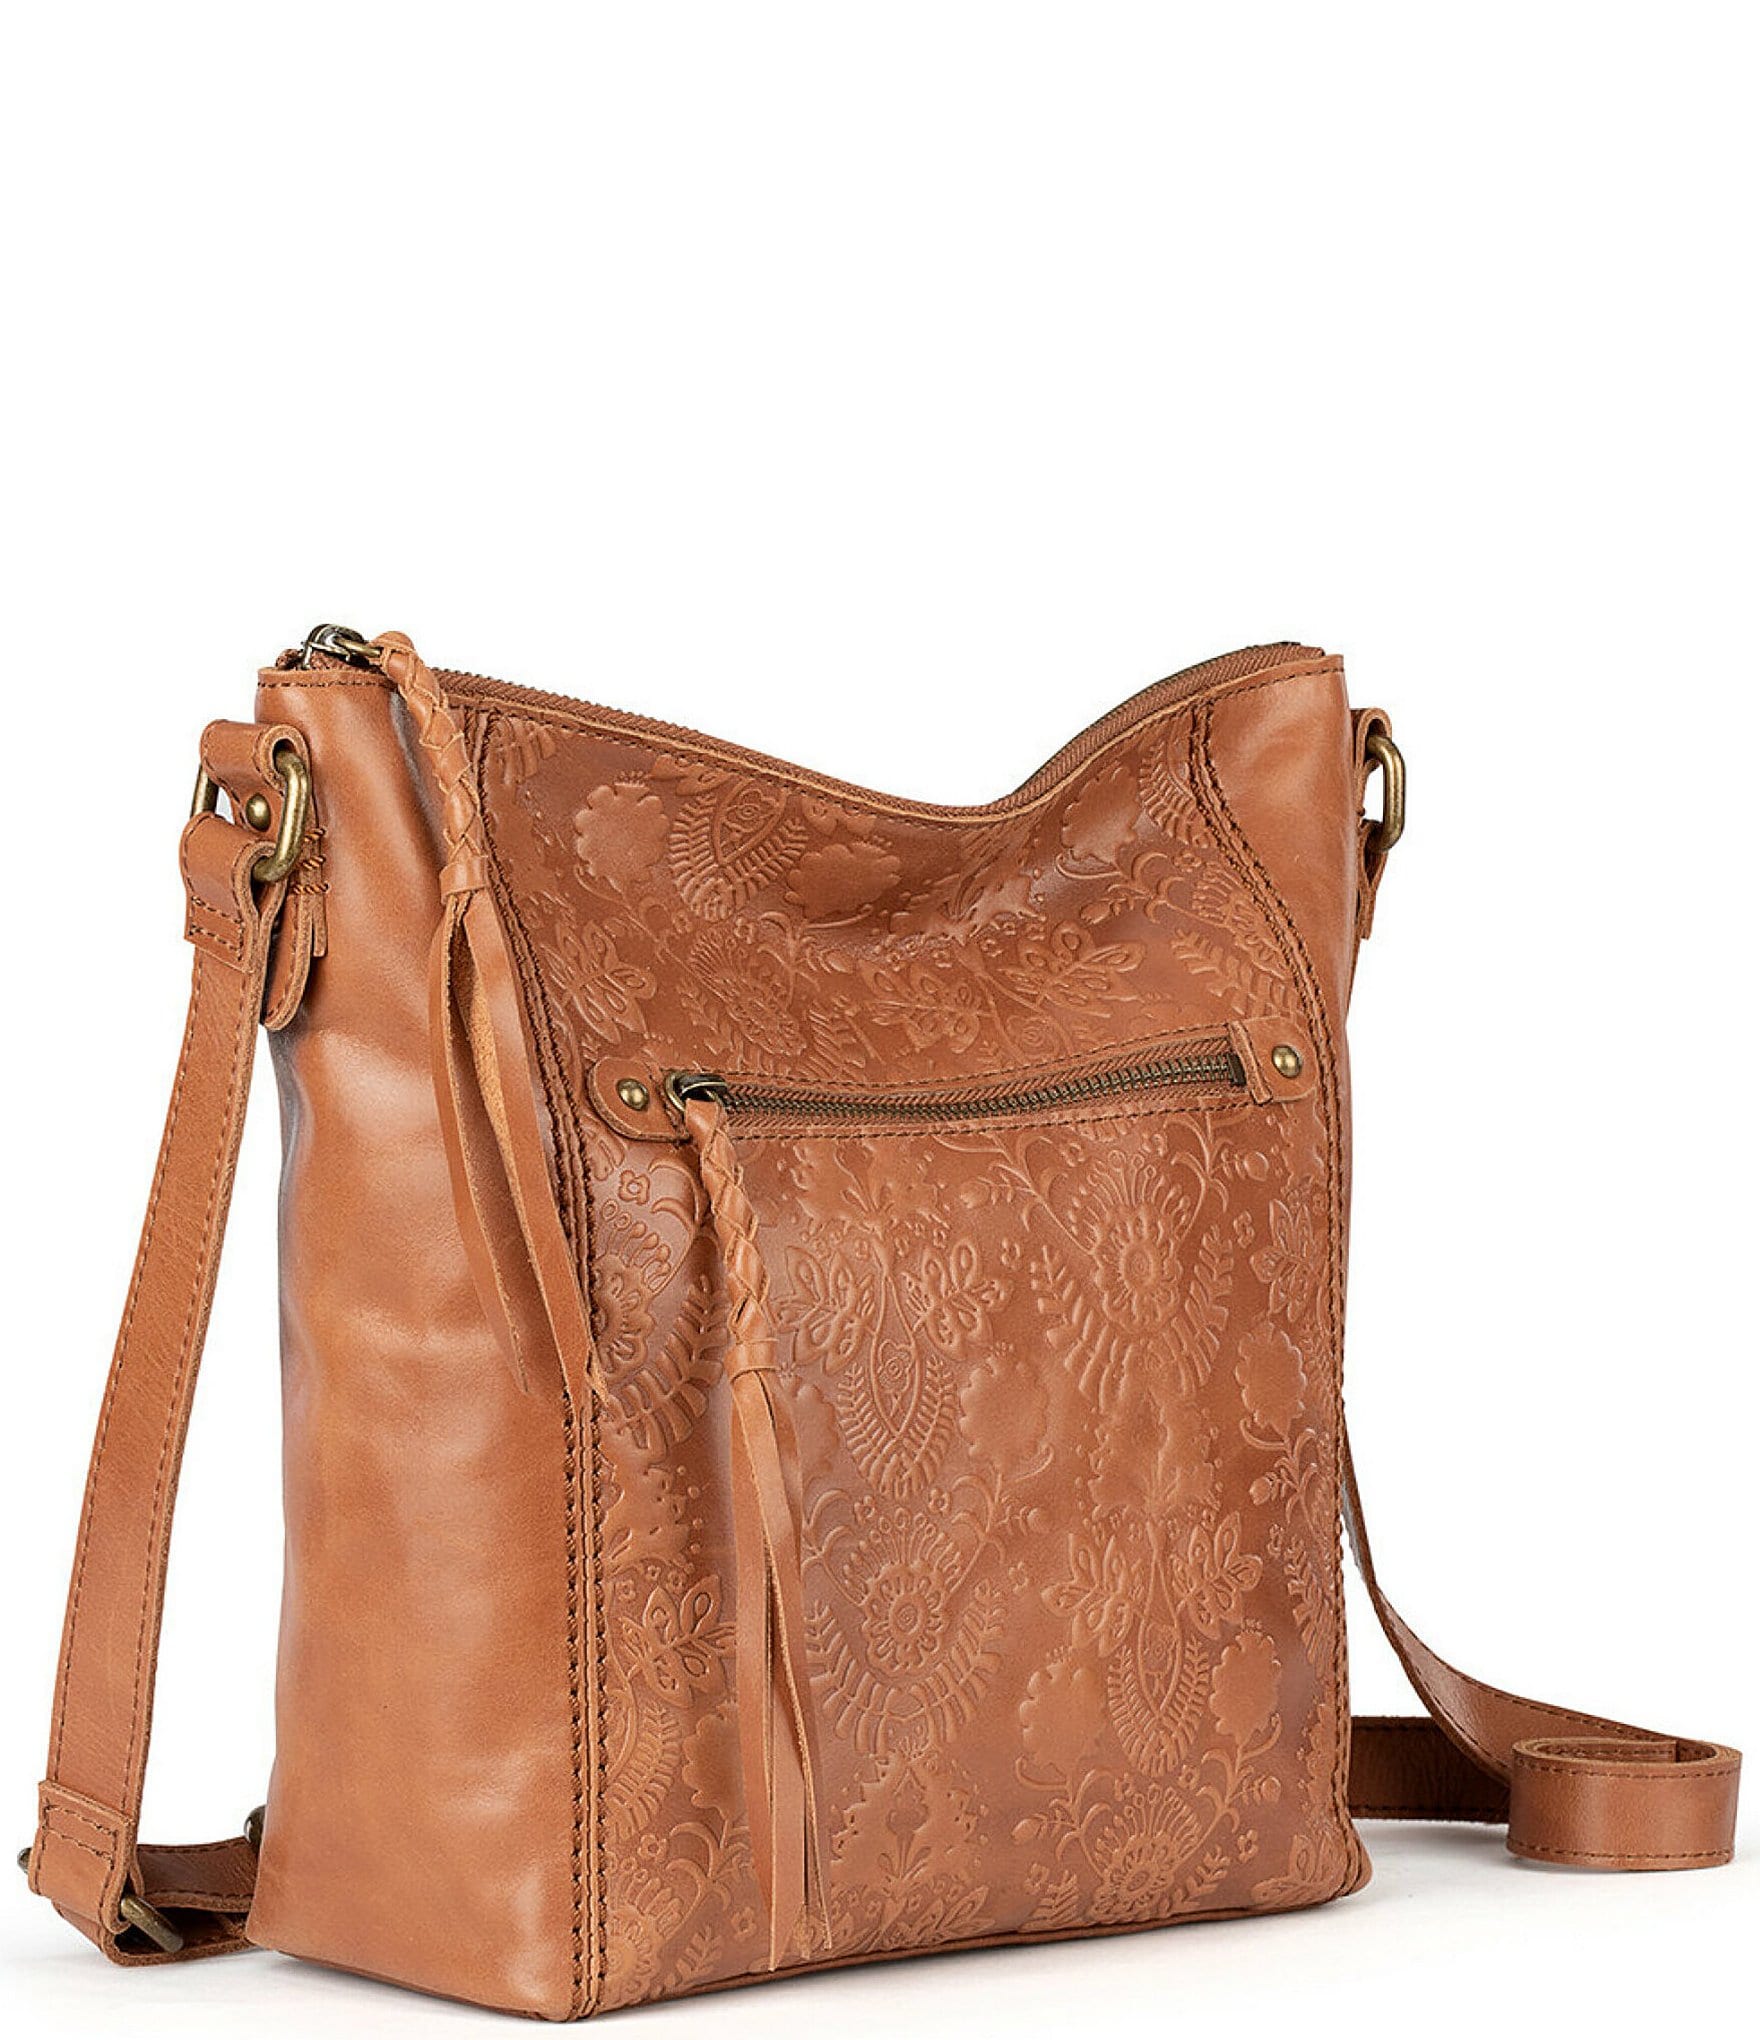 The Sak Ashland Leather Crossbody Bag